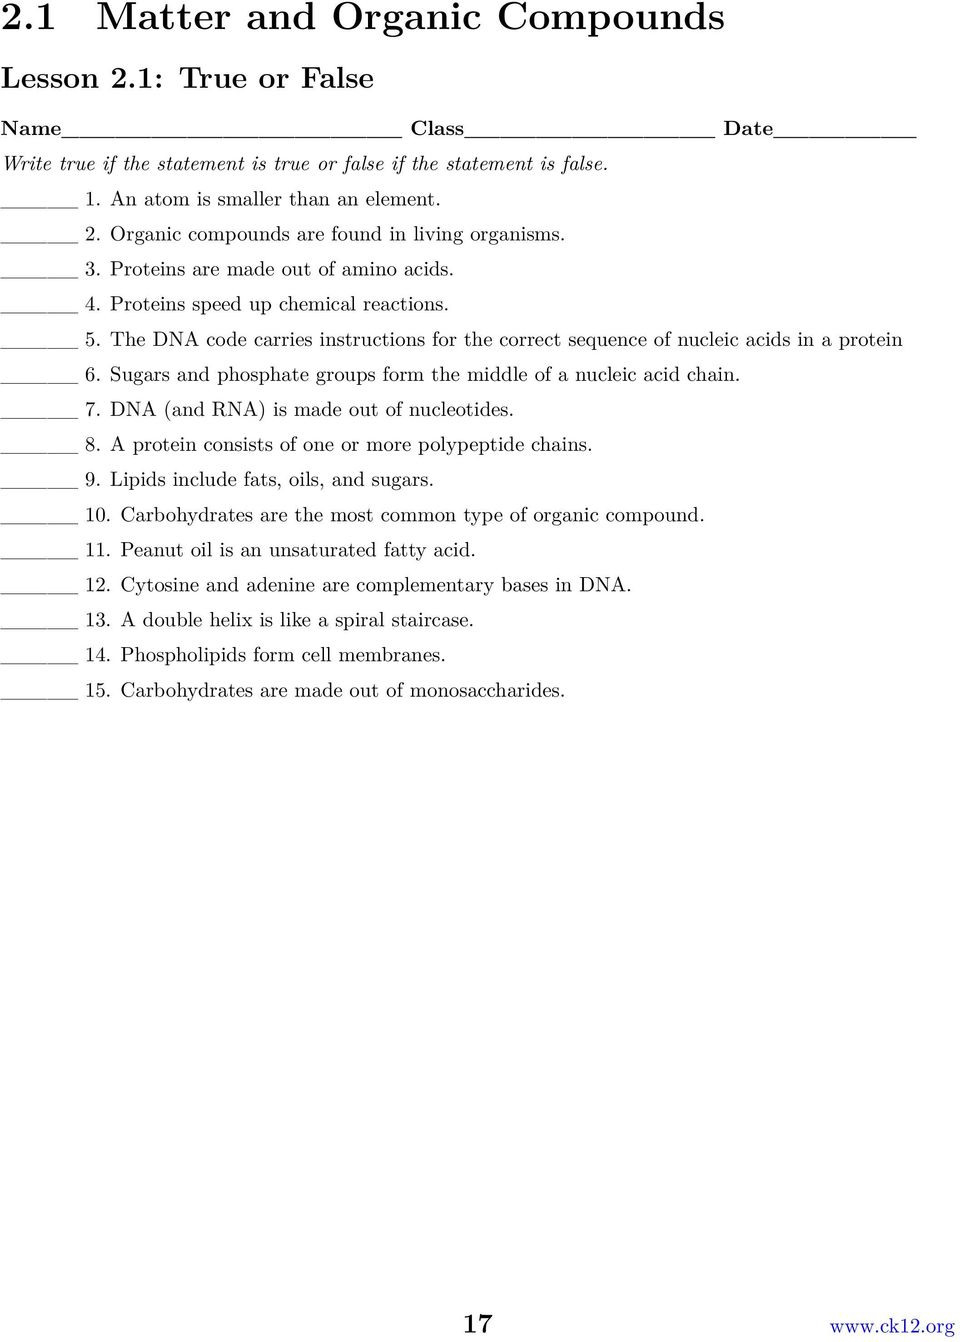 Properties Of Water Worksheet